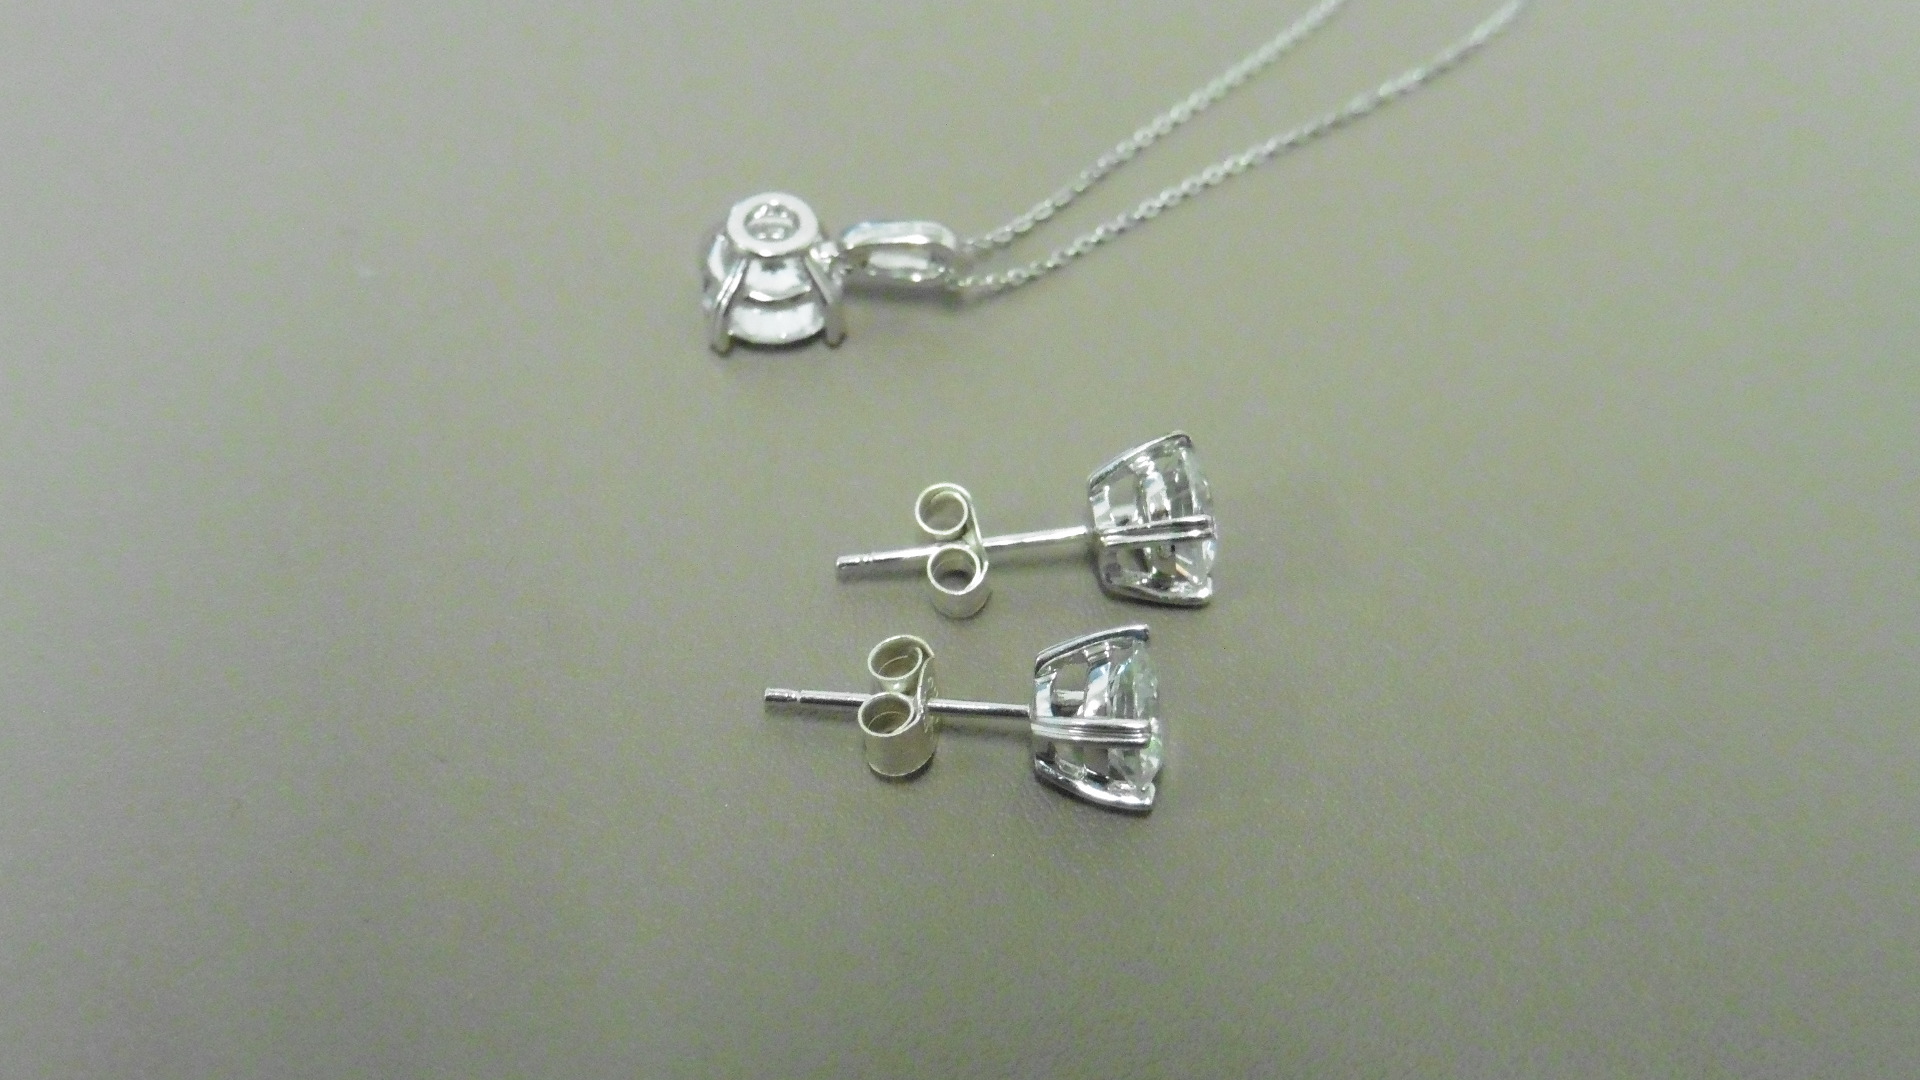 0.45ct / 0.80ct diamond pendant and earring set in platinum. Pendant - 0.40ct brilliant cut diamond, - Image 2 of 2